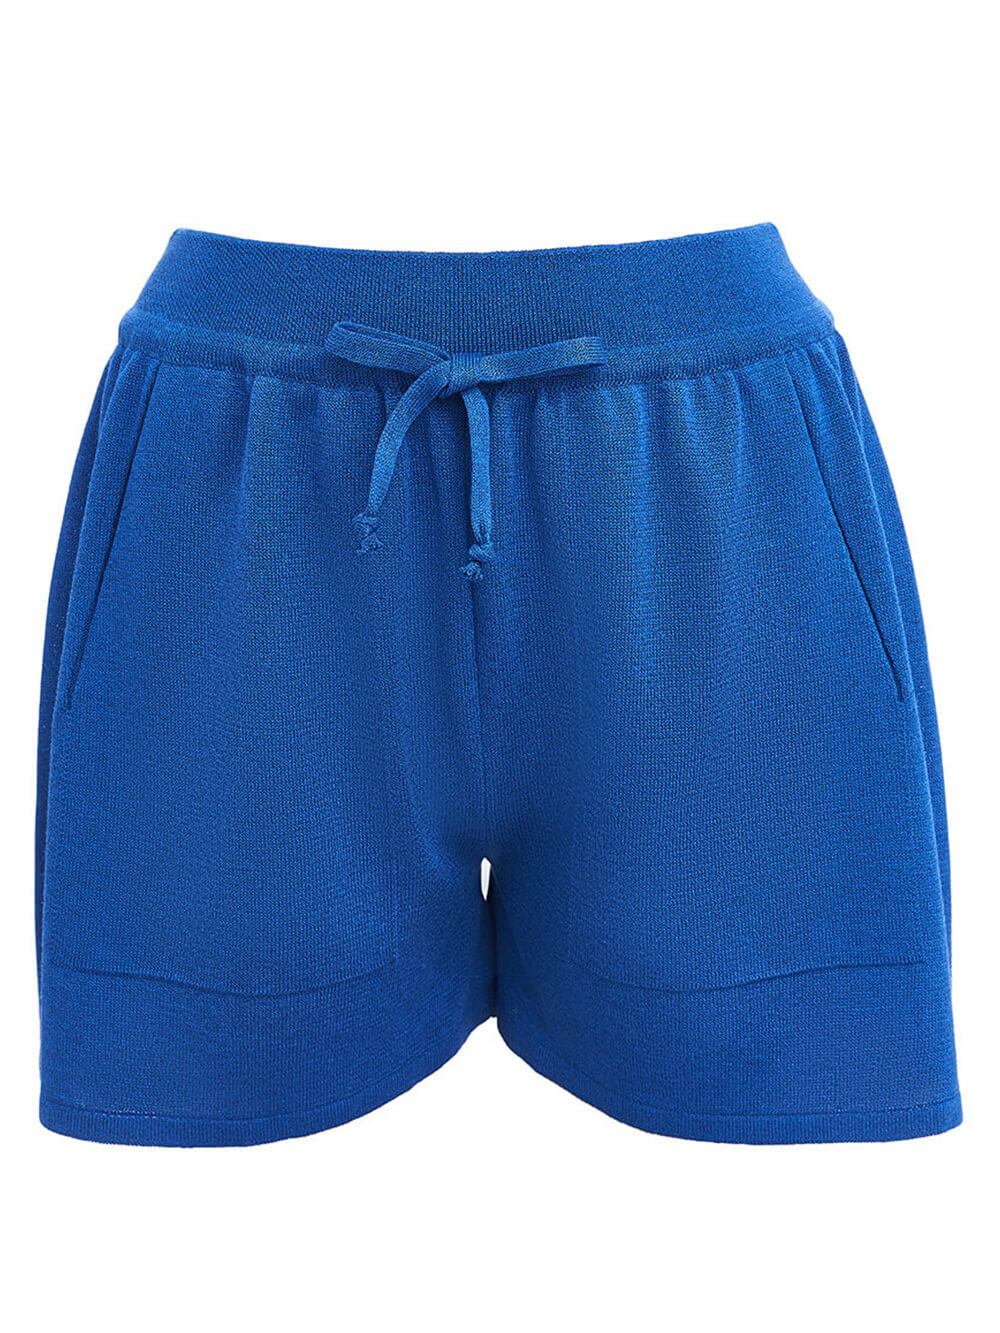 Женские шорты синего цвета из вискозы